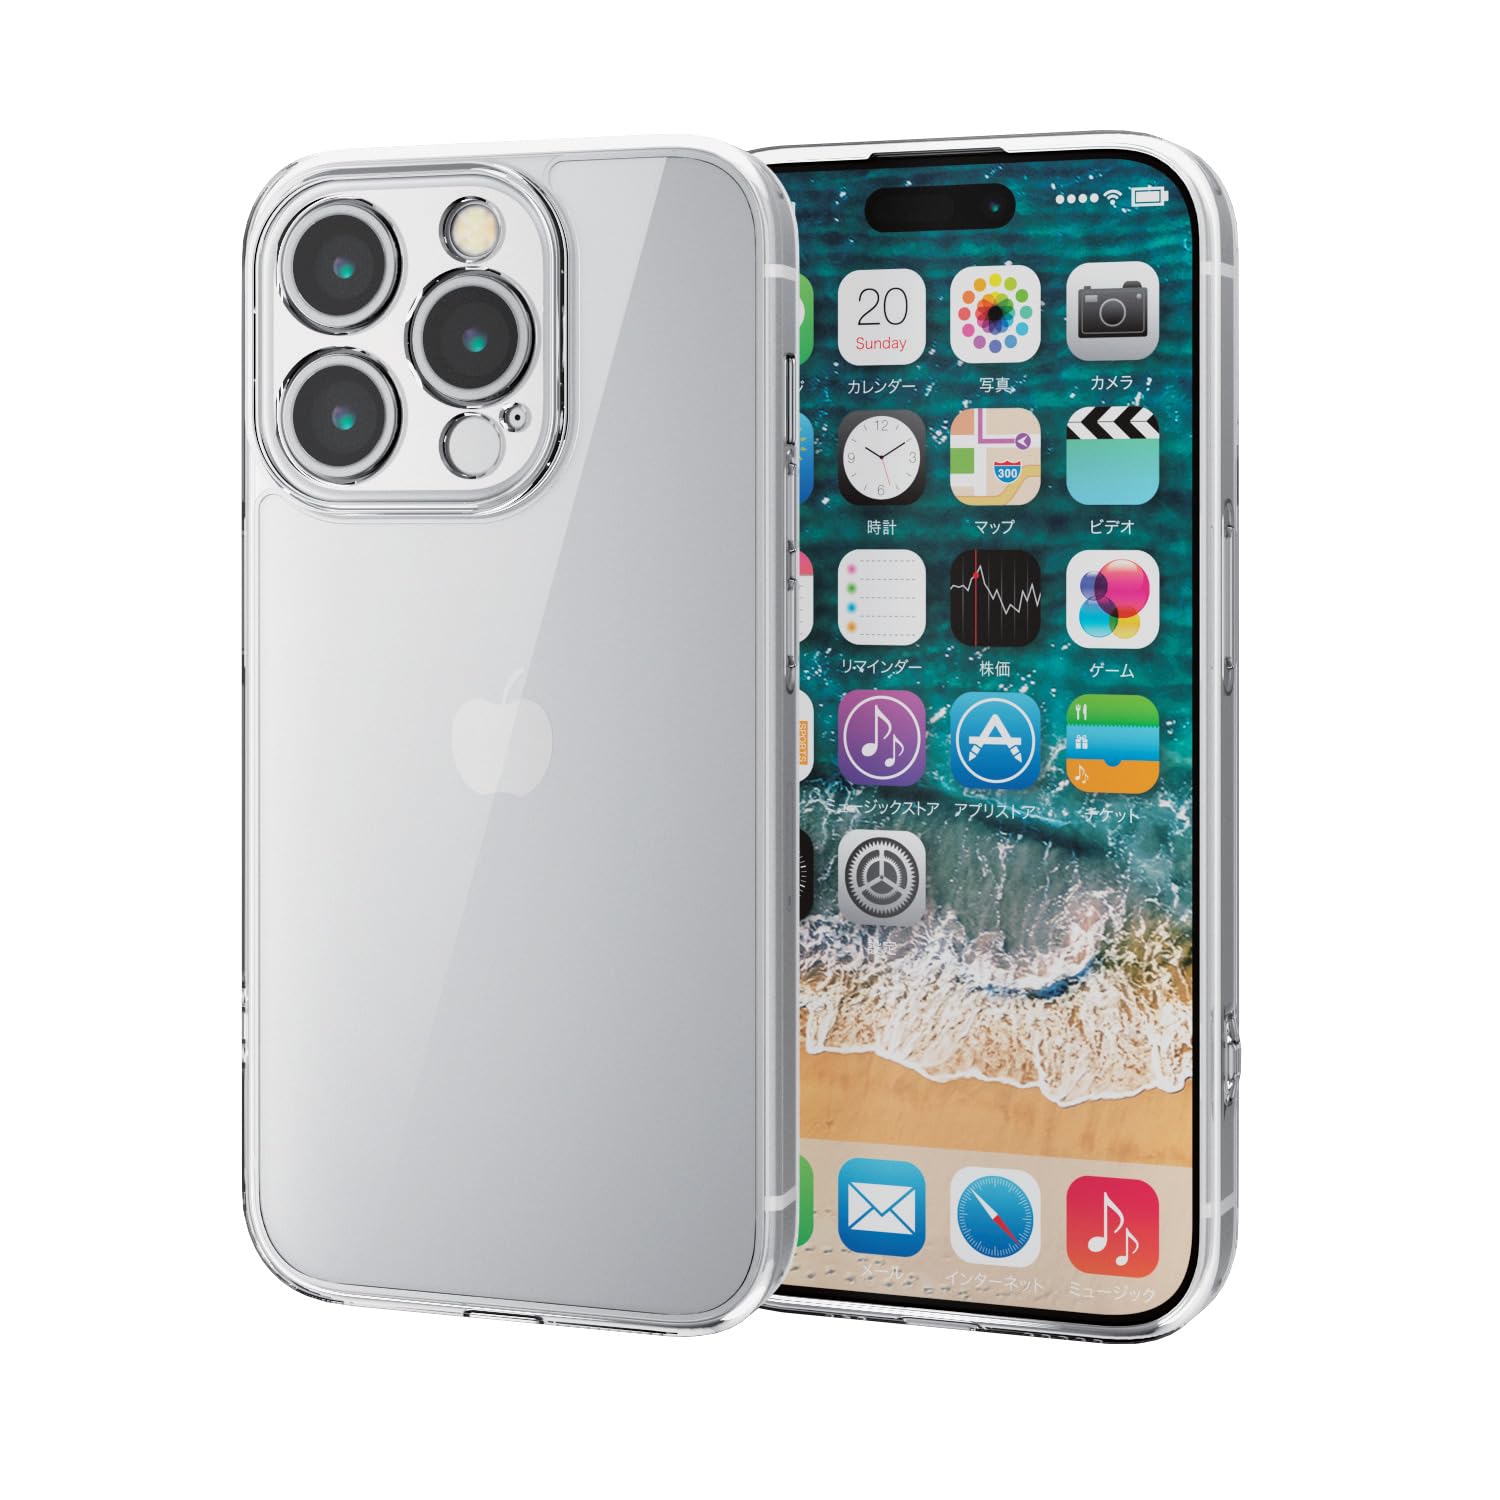 エレコム iPhone15 Pro ケース カメラ保護 耐衝撃 衝撃吸収 ハイブリッド素材 四つ角エアークッション ストラップホール付き [カメラ・ス